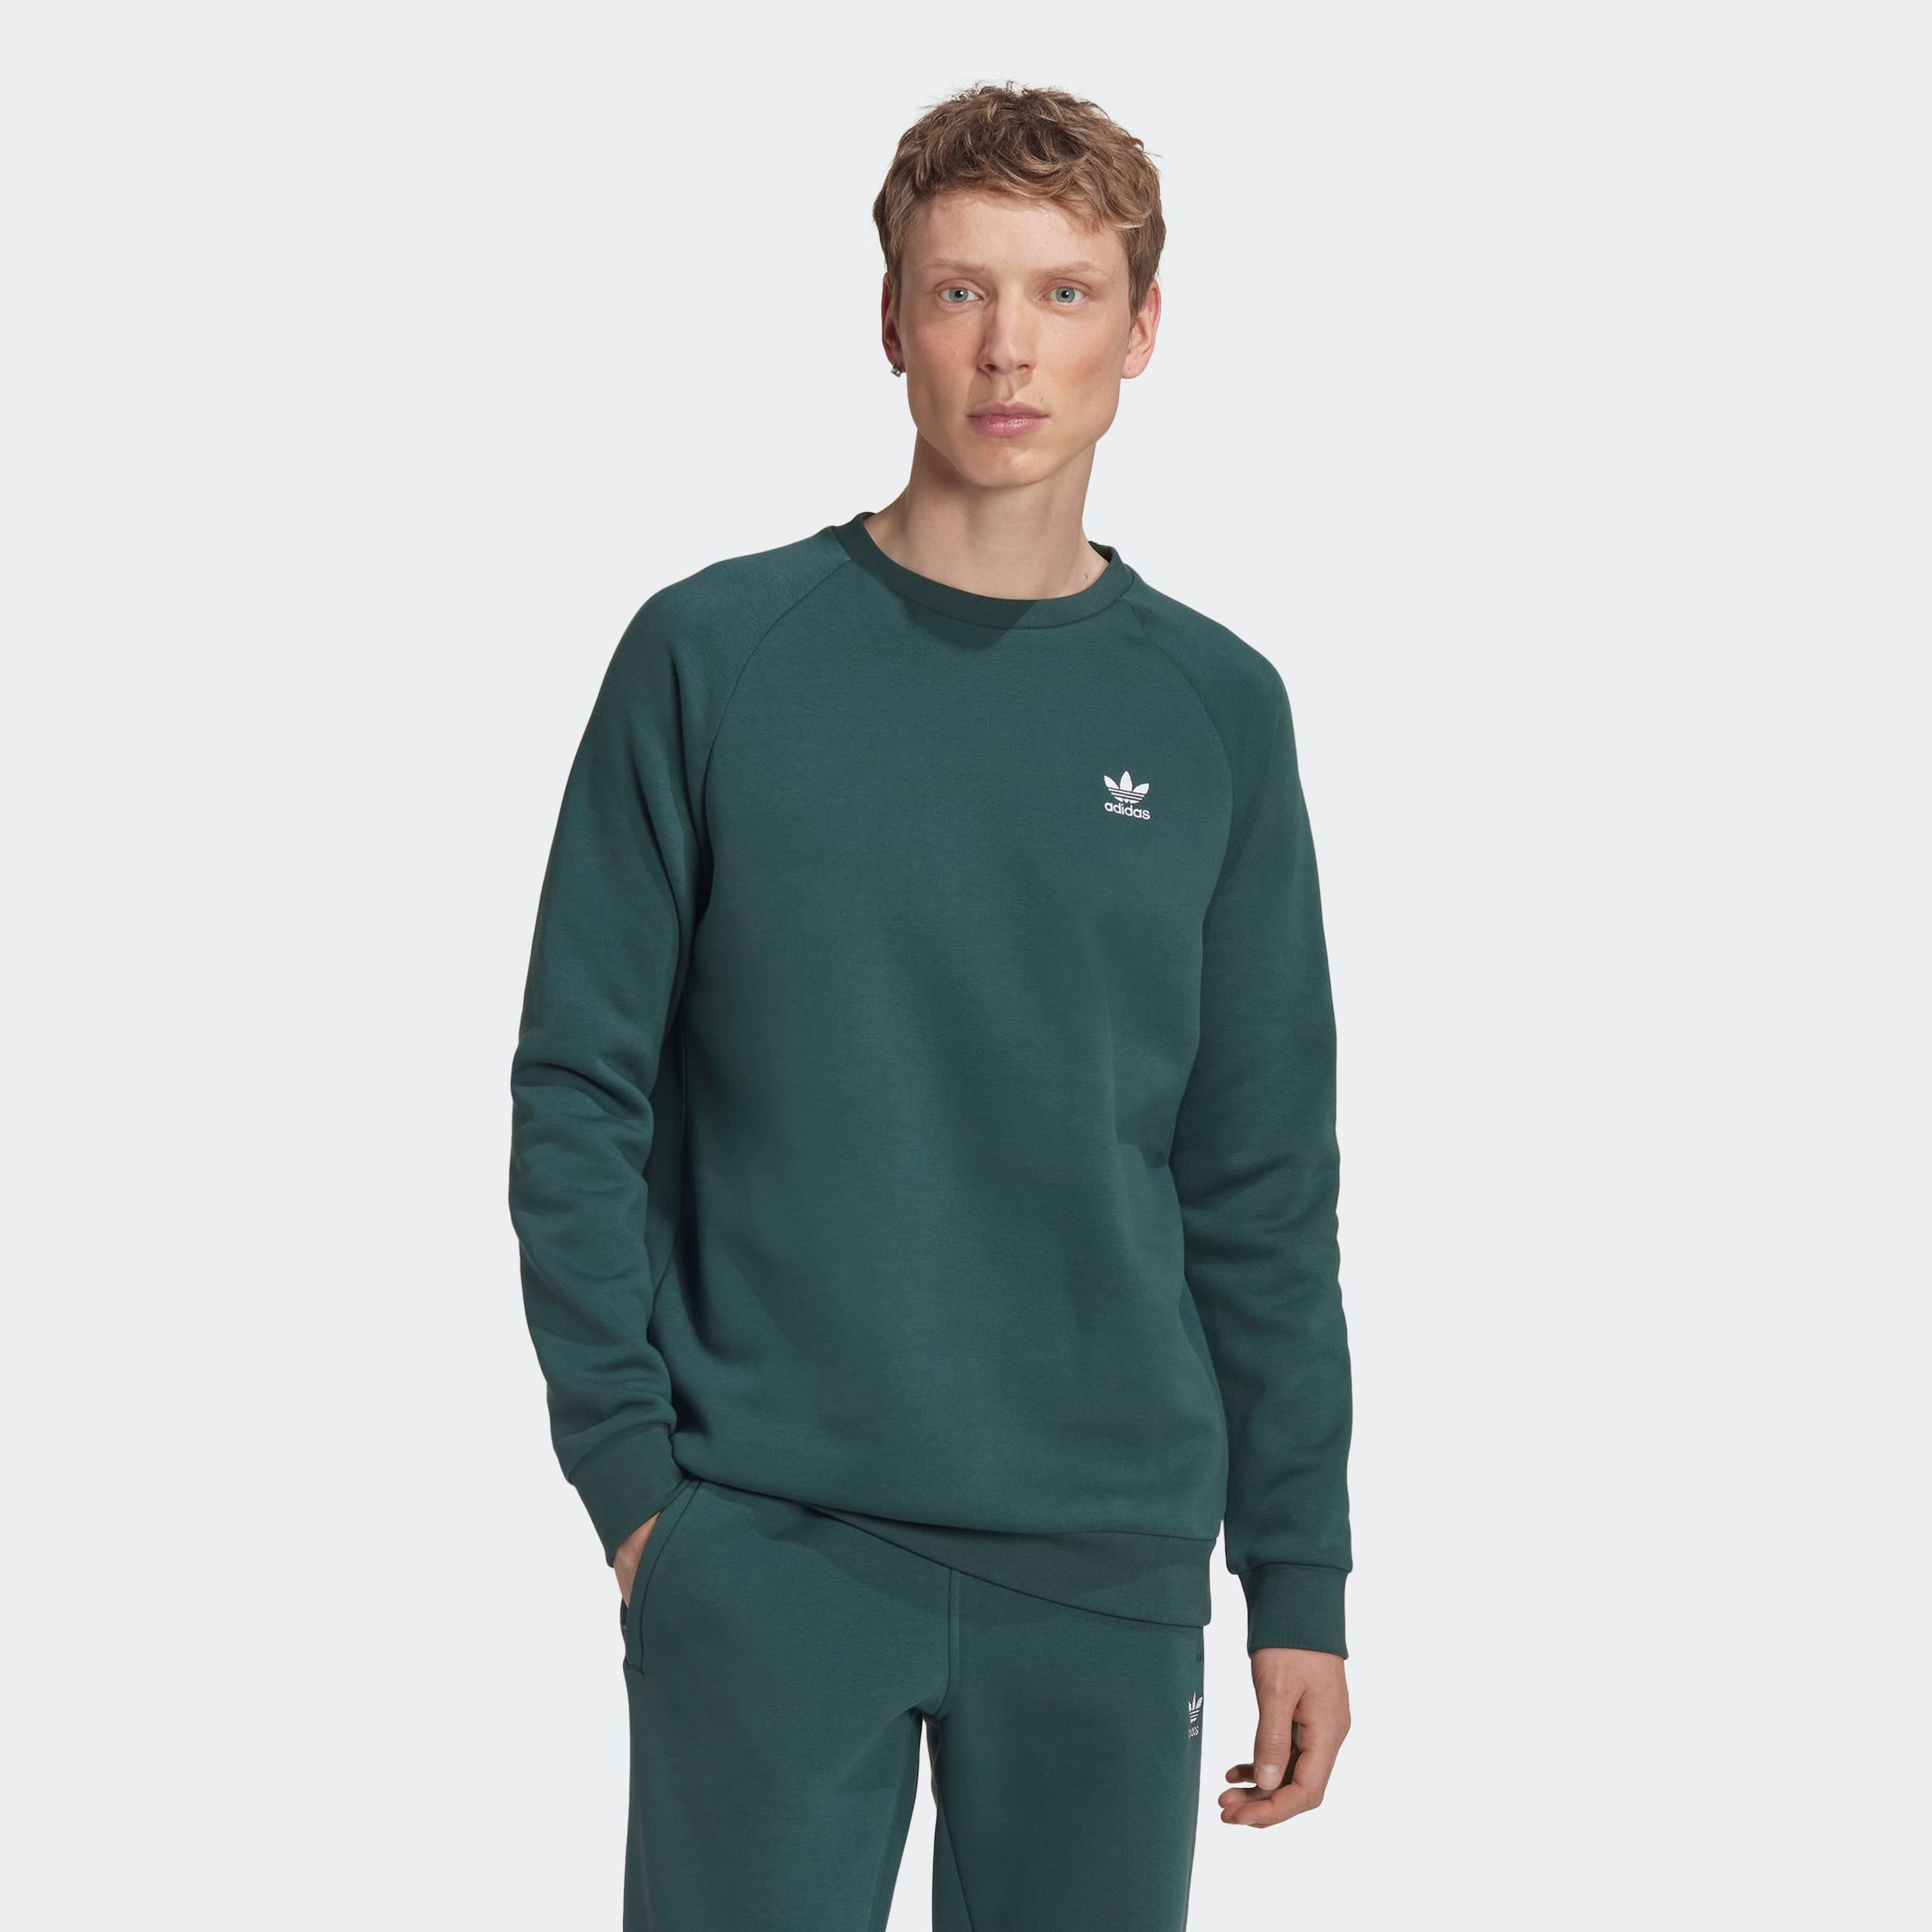 adidas Originals Essential Crew - Mineral Green - Tops - Mens Clothing